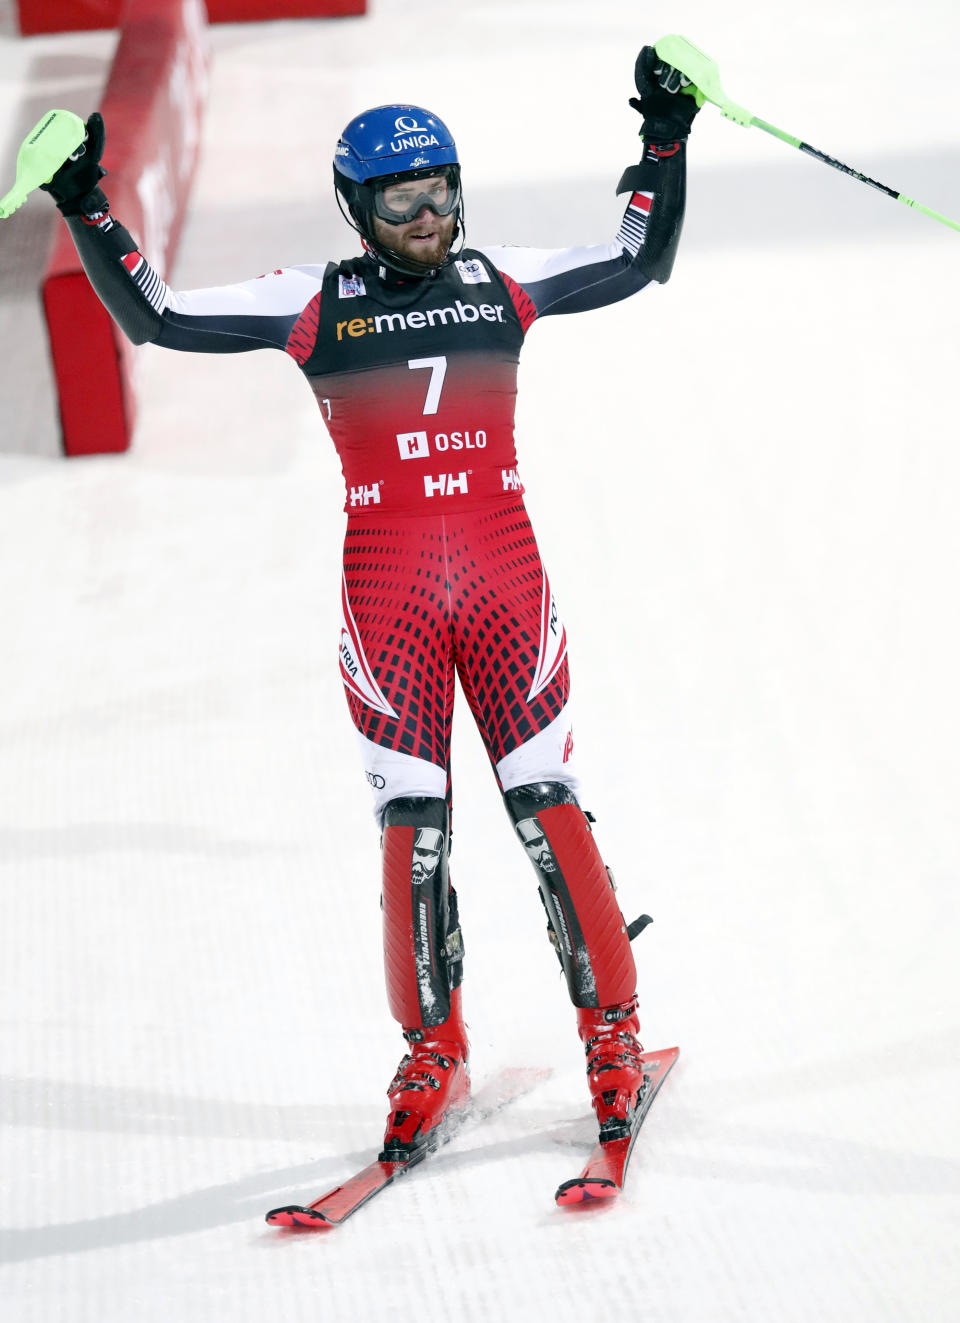 Marco Schwarz of Austria, celebrates in the finish area after winning an alpine ski, men's World Cup parallel slalom, at Holmenkollen in Oslo, Norway, Tuesday, Jan. 1, 2019. (Terje Bendiksby/NTB scanpix via AP)